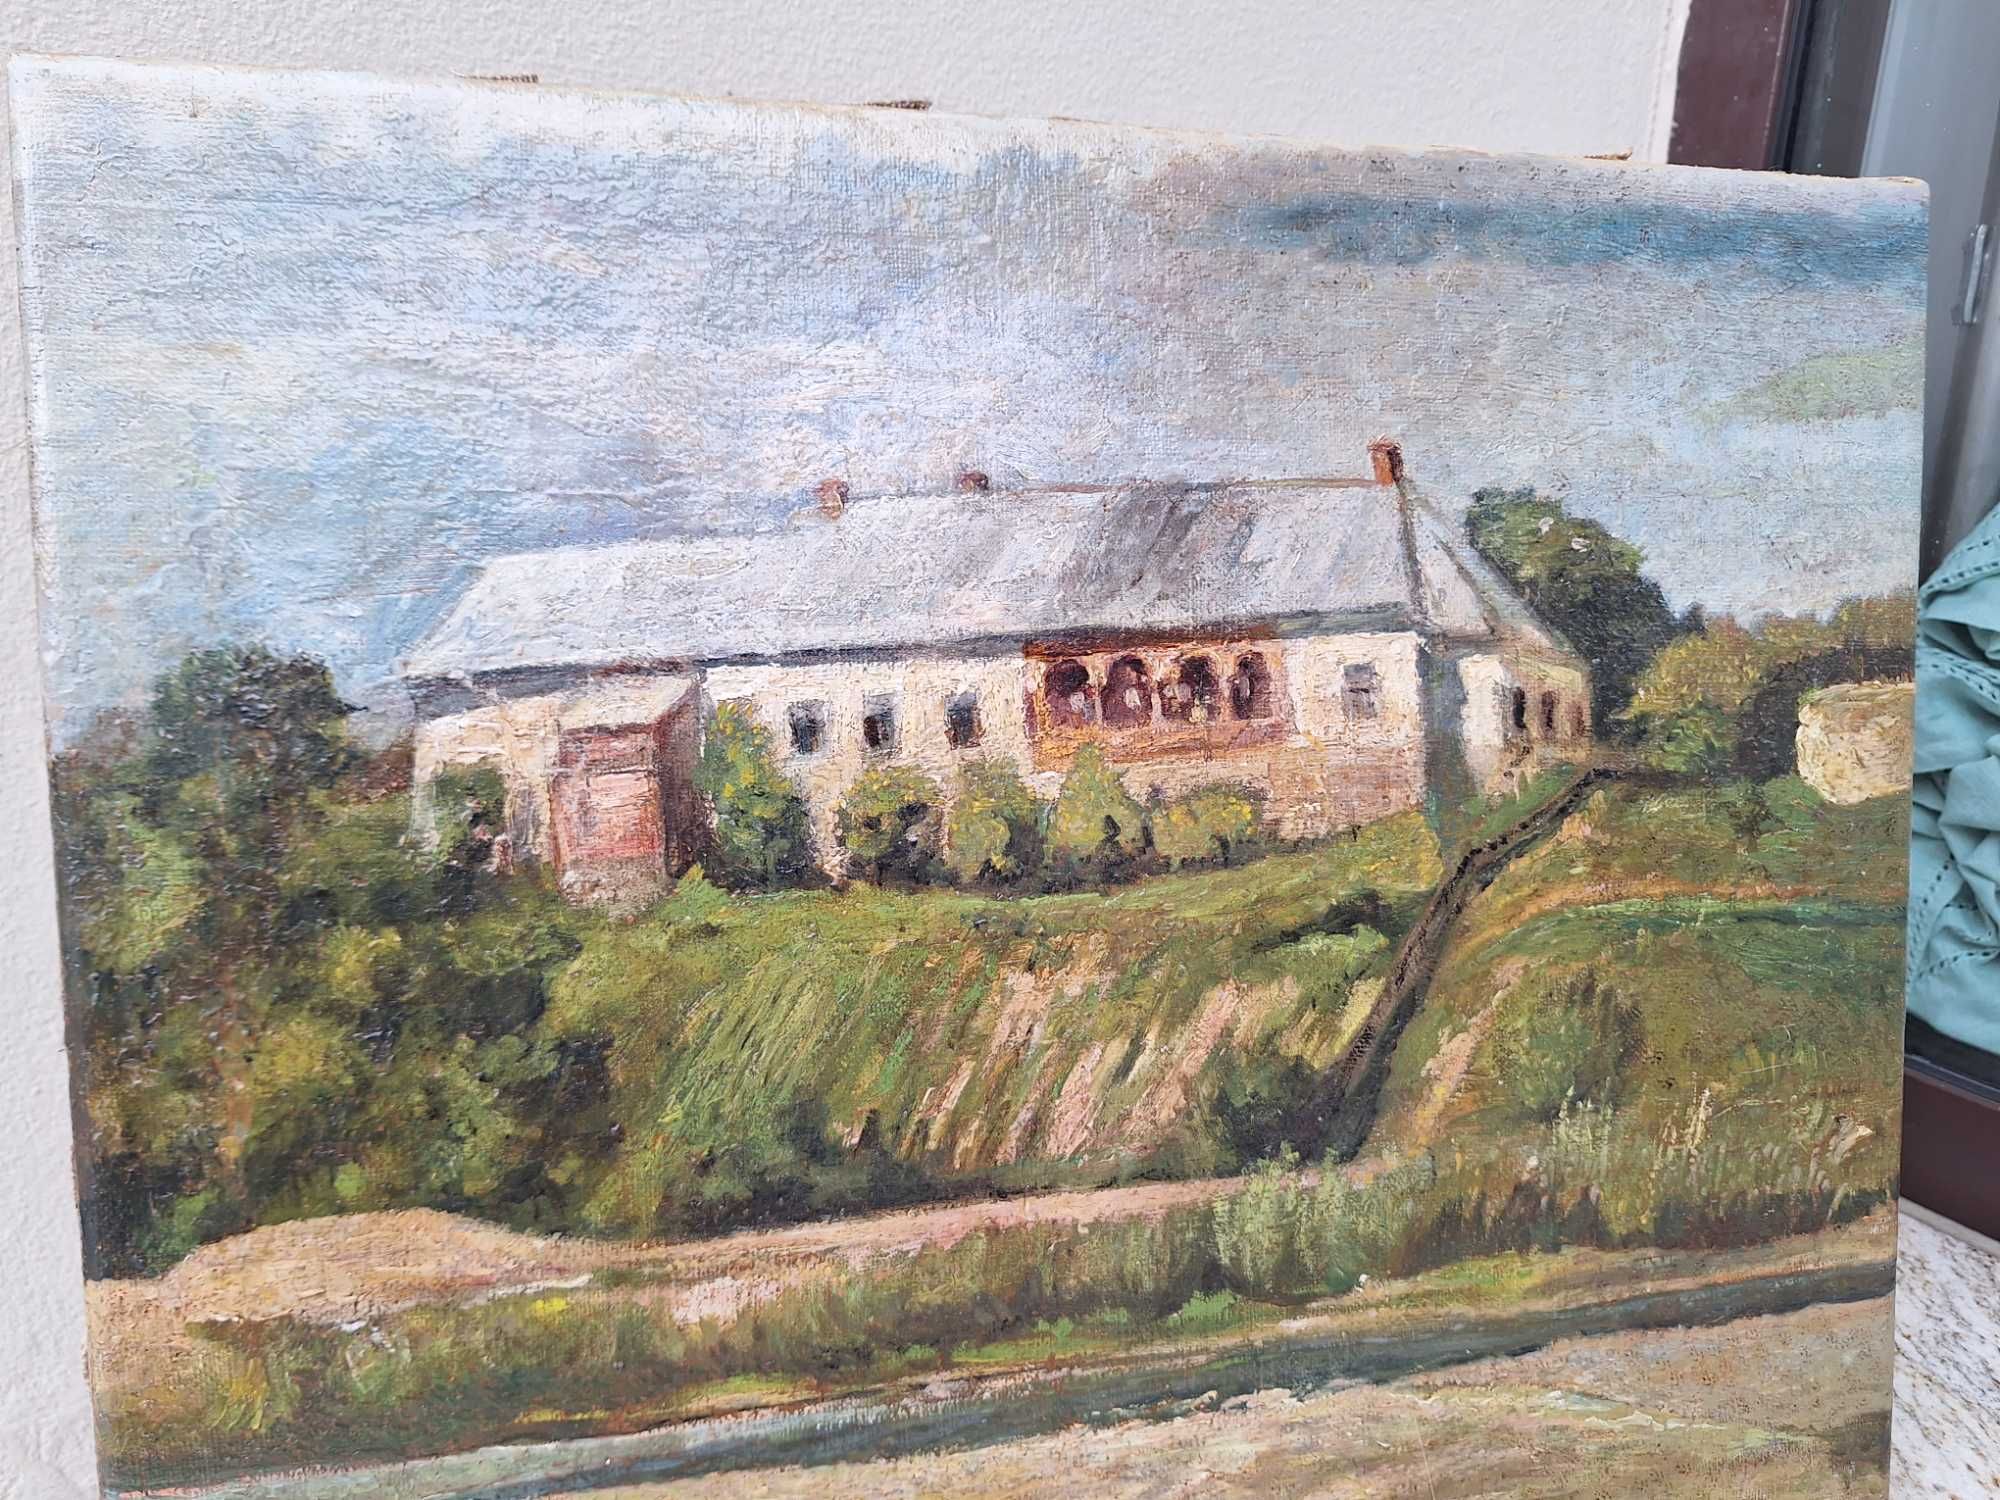 Pejzaż z widokiem na budynek poczty konnej-kresy-obraz-olej-k.XIXw